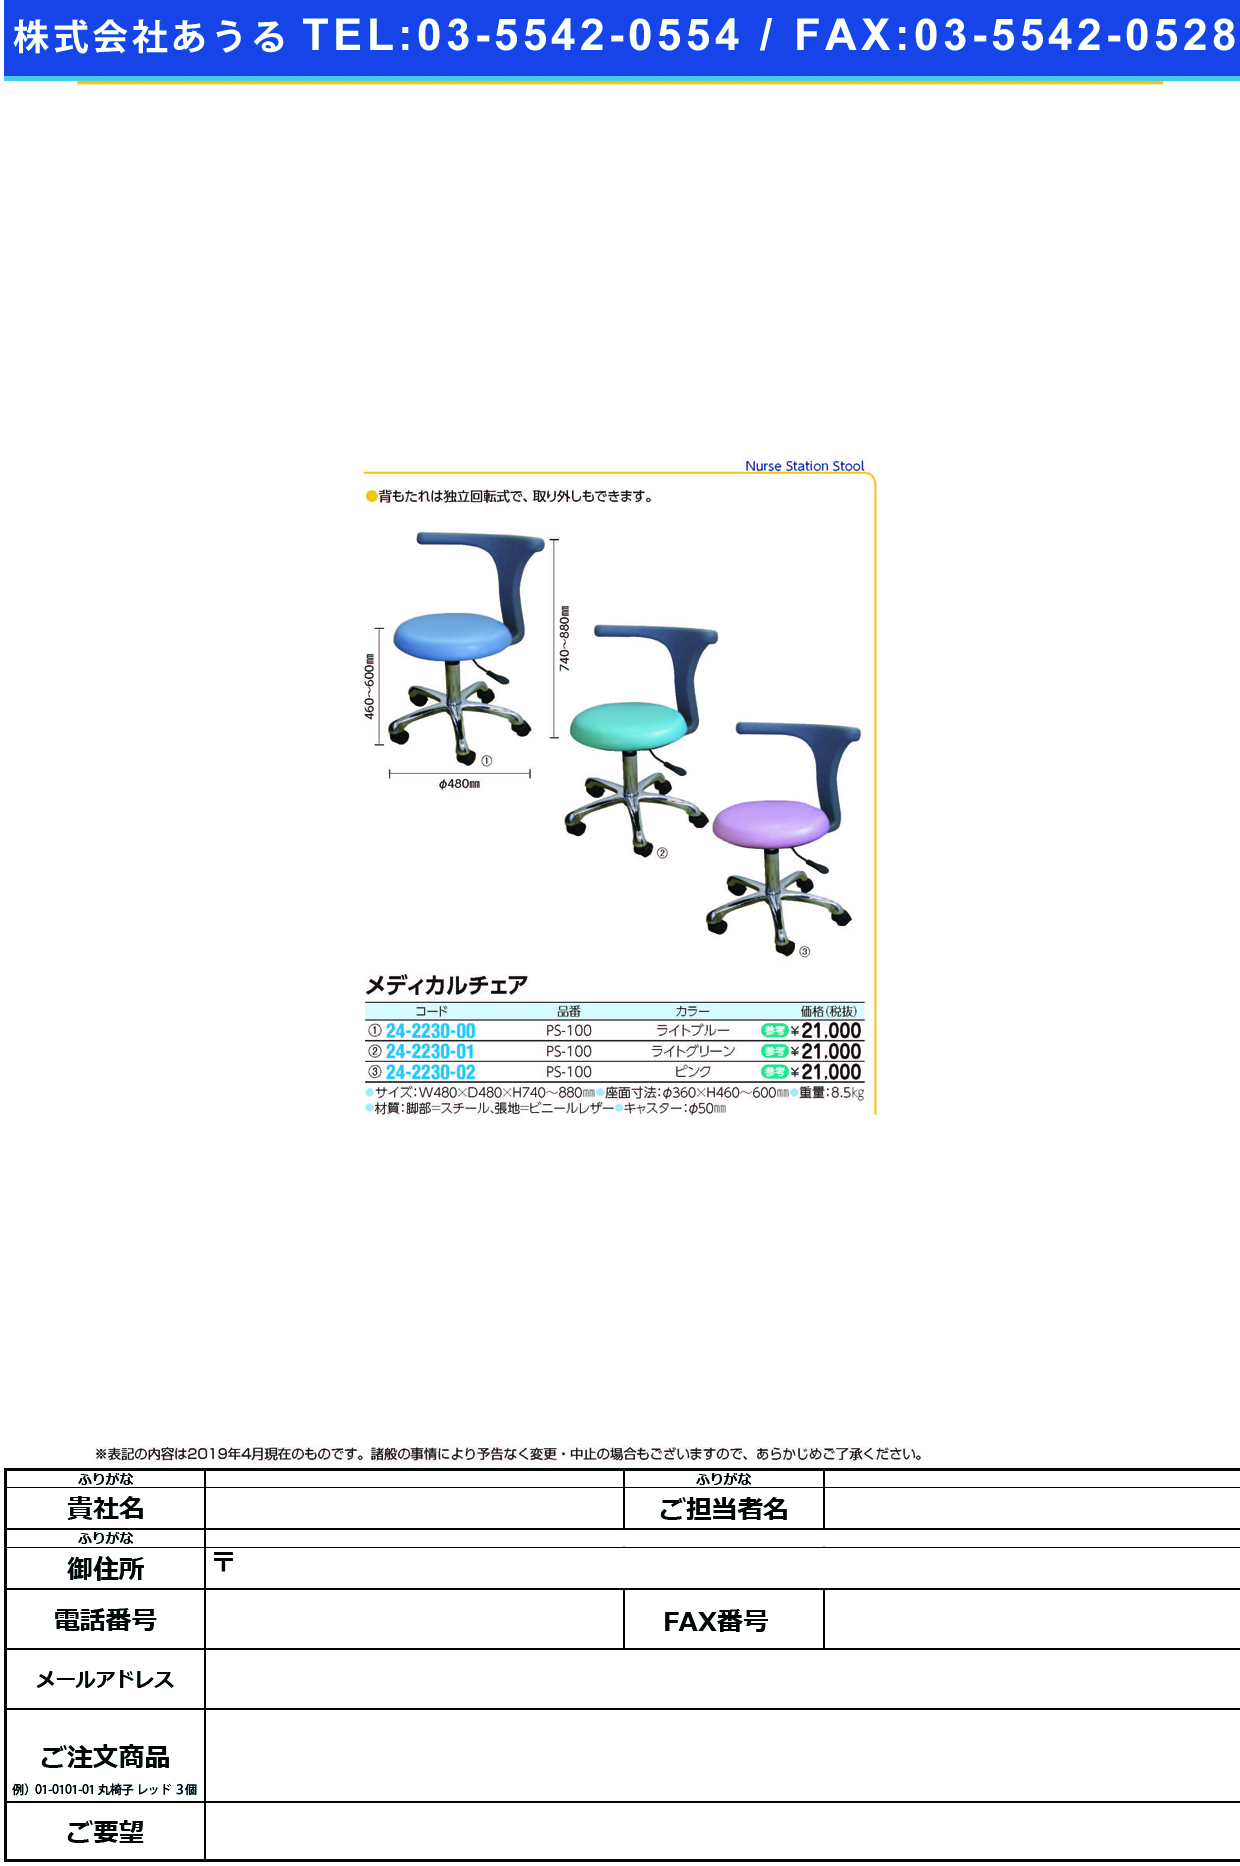 (24-2230-01)メディカルチェア PS-100(ﾗｲﾄｸﾞﾘｰﾝ) ﾒﾃﾞｨｶﾙﾁｪｱ【1台単位】【2019年カタログ商品】